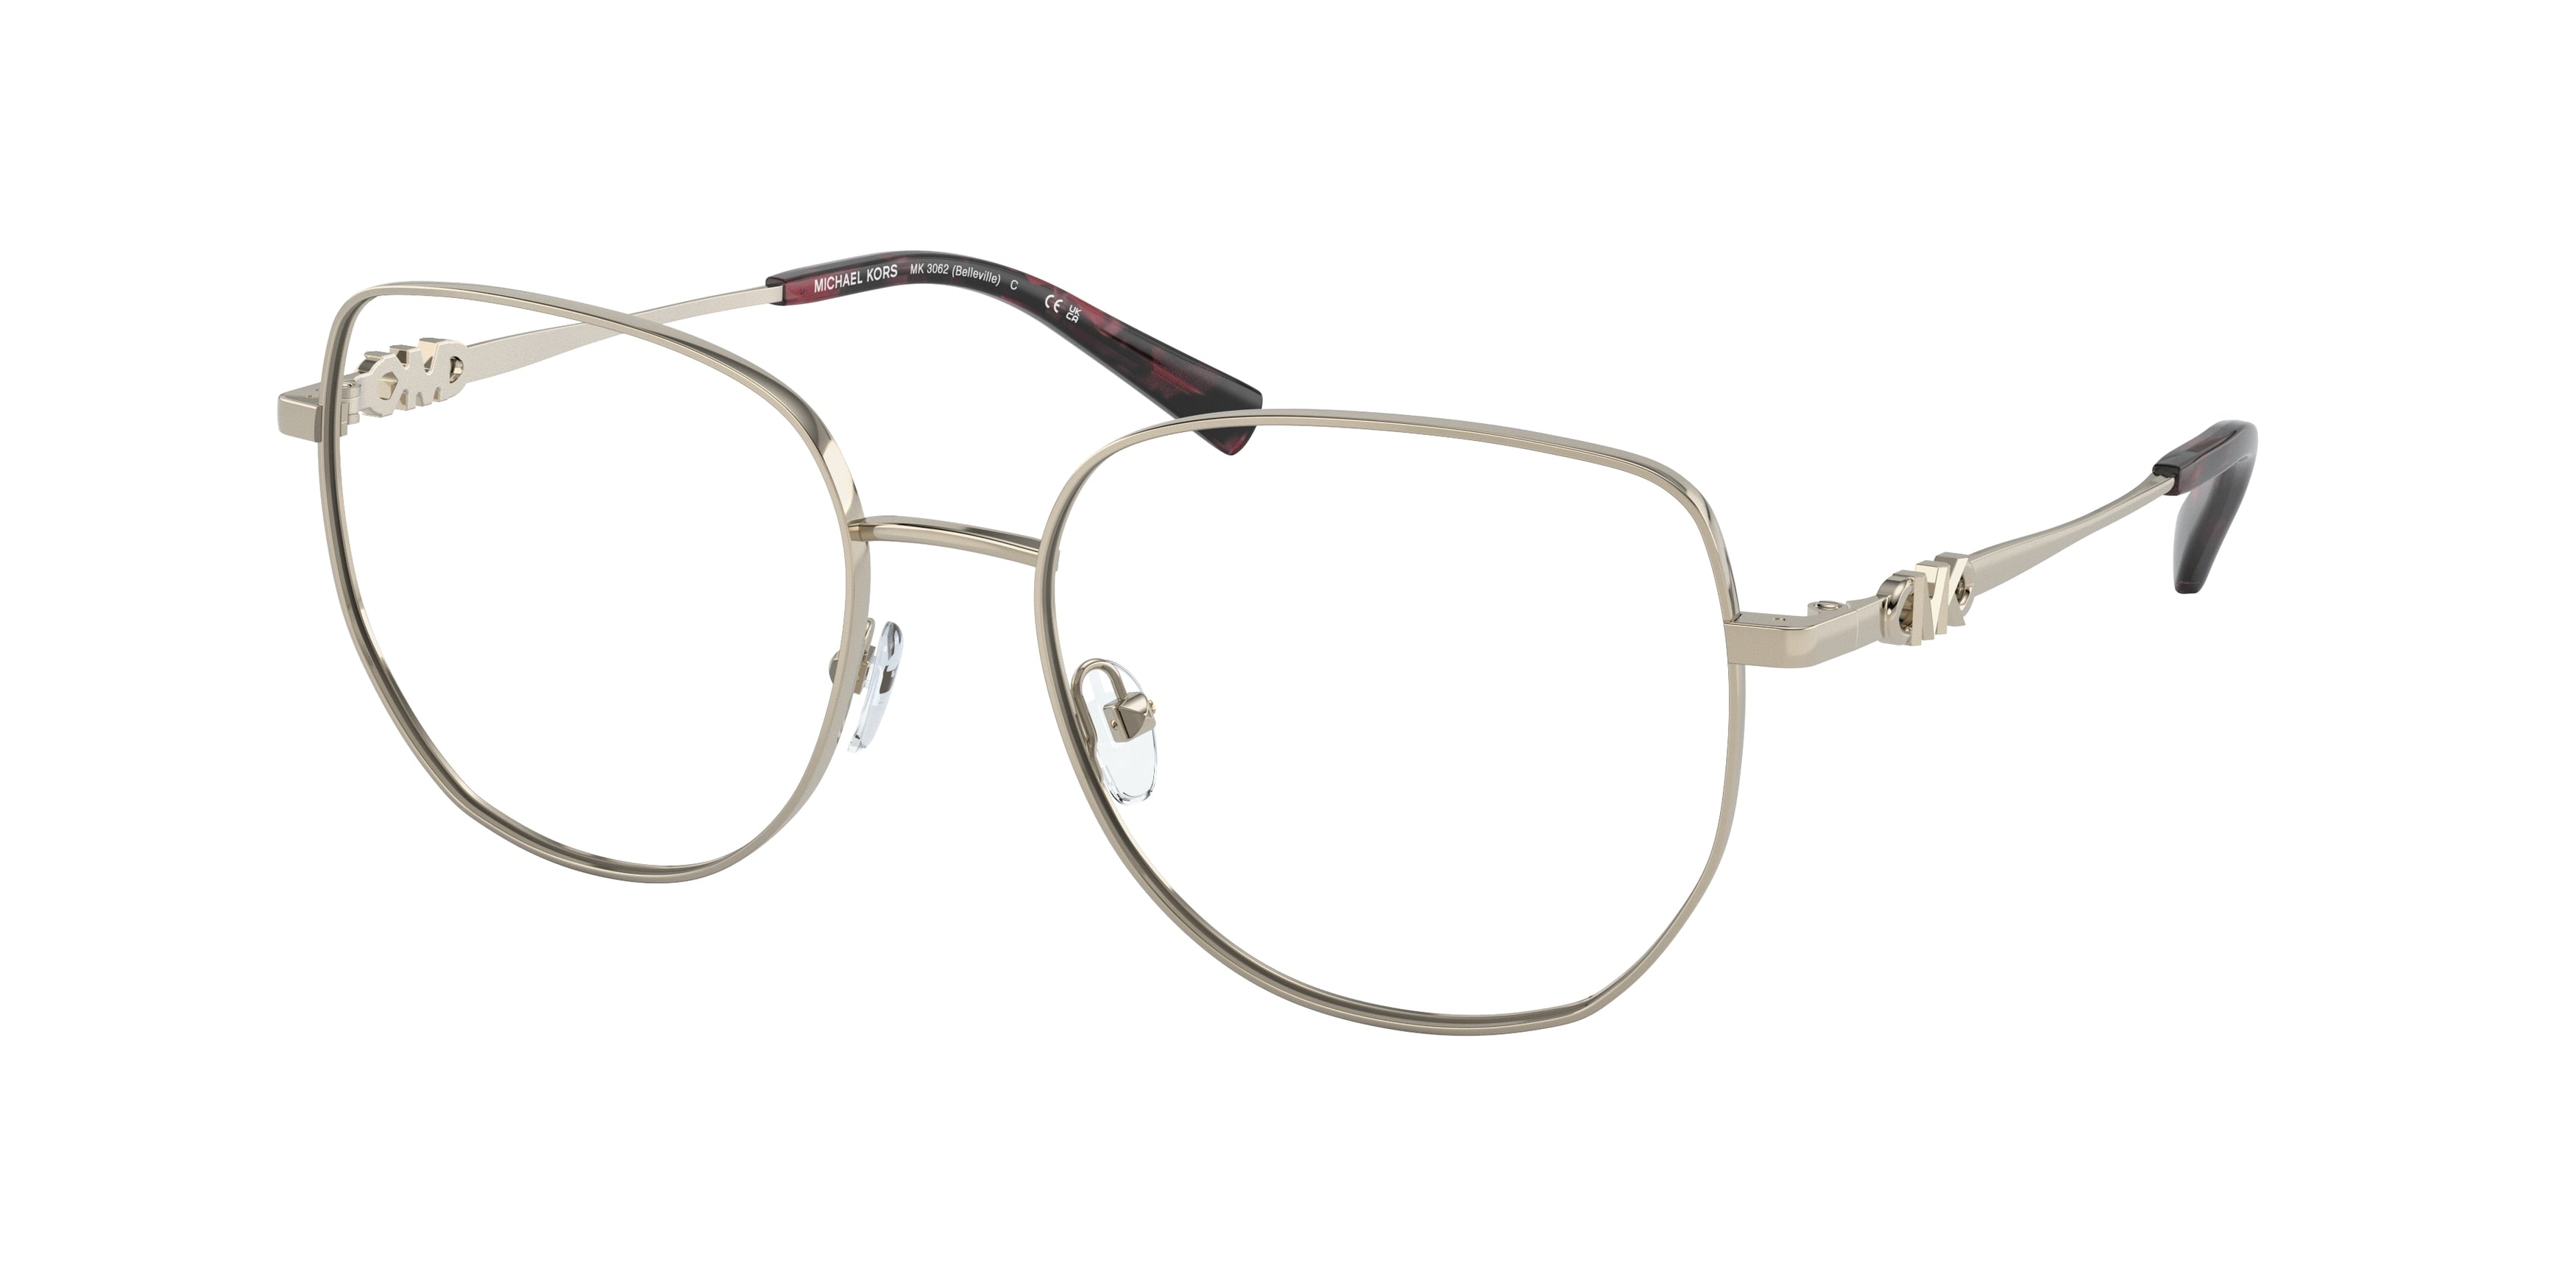 Michael Kors BELLEVILLE MK3062 Square Eyeglasses  1015-Light Gold 54-140-17 - Color Map Gold